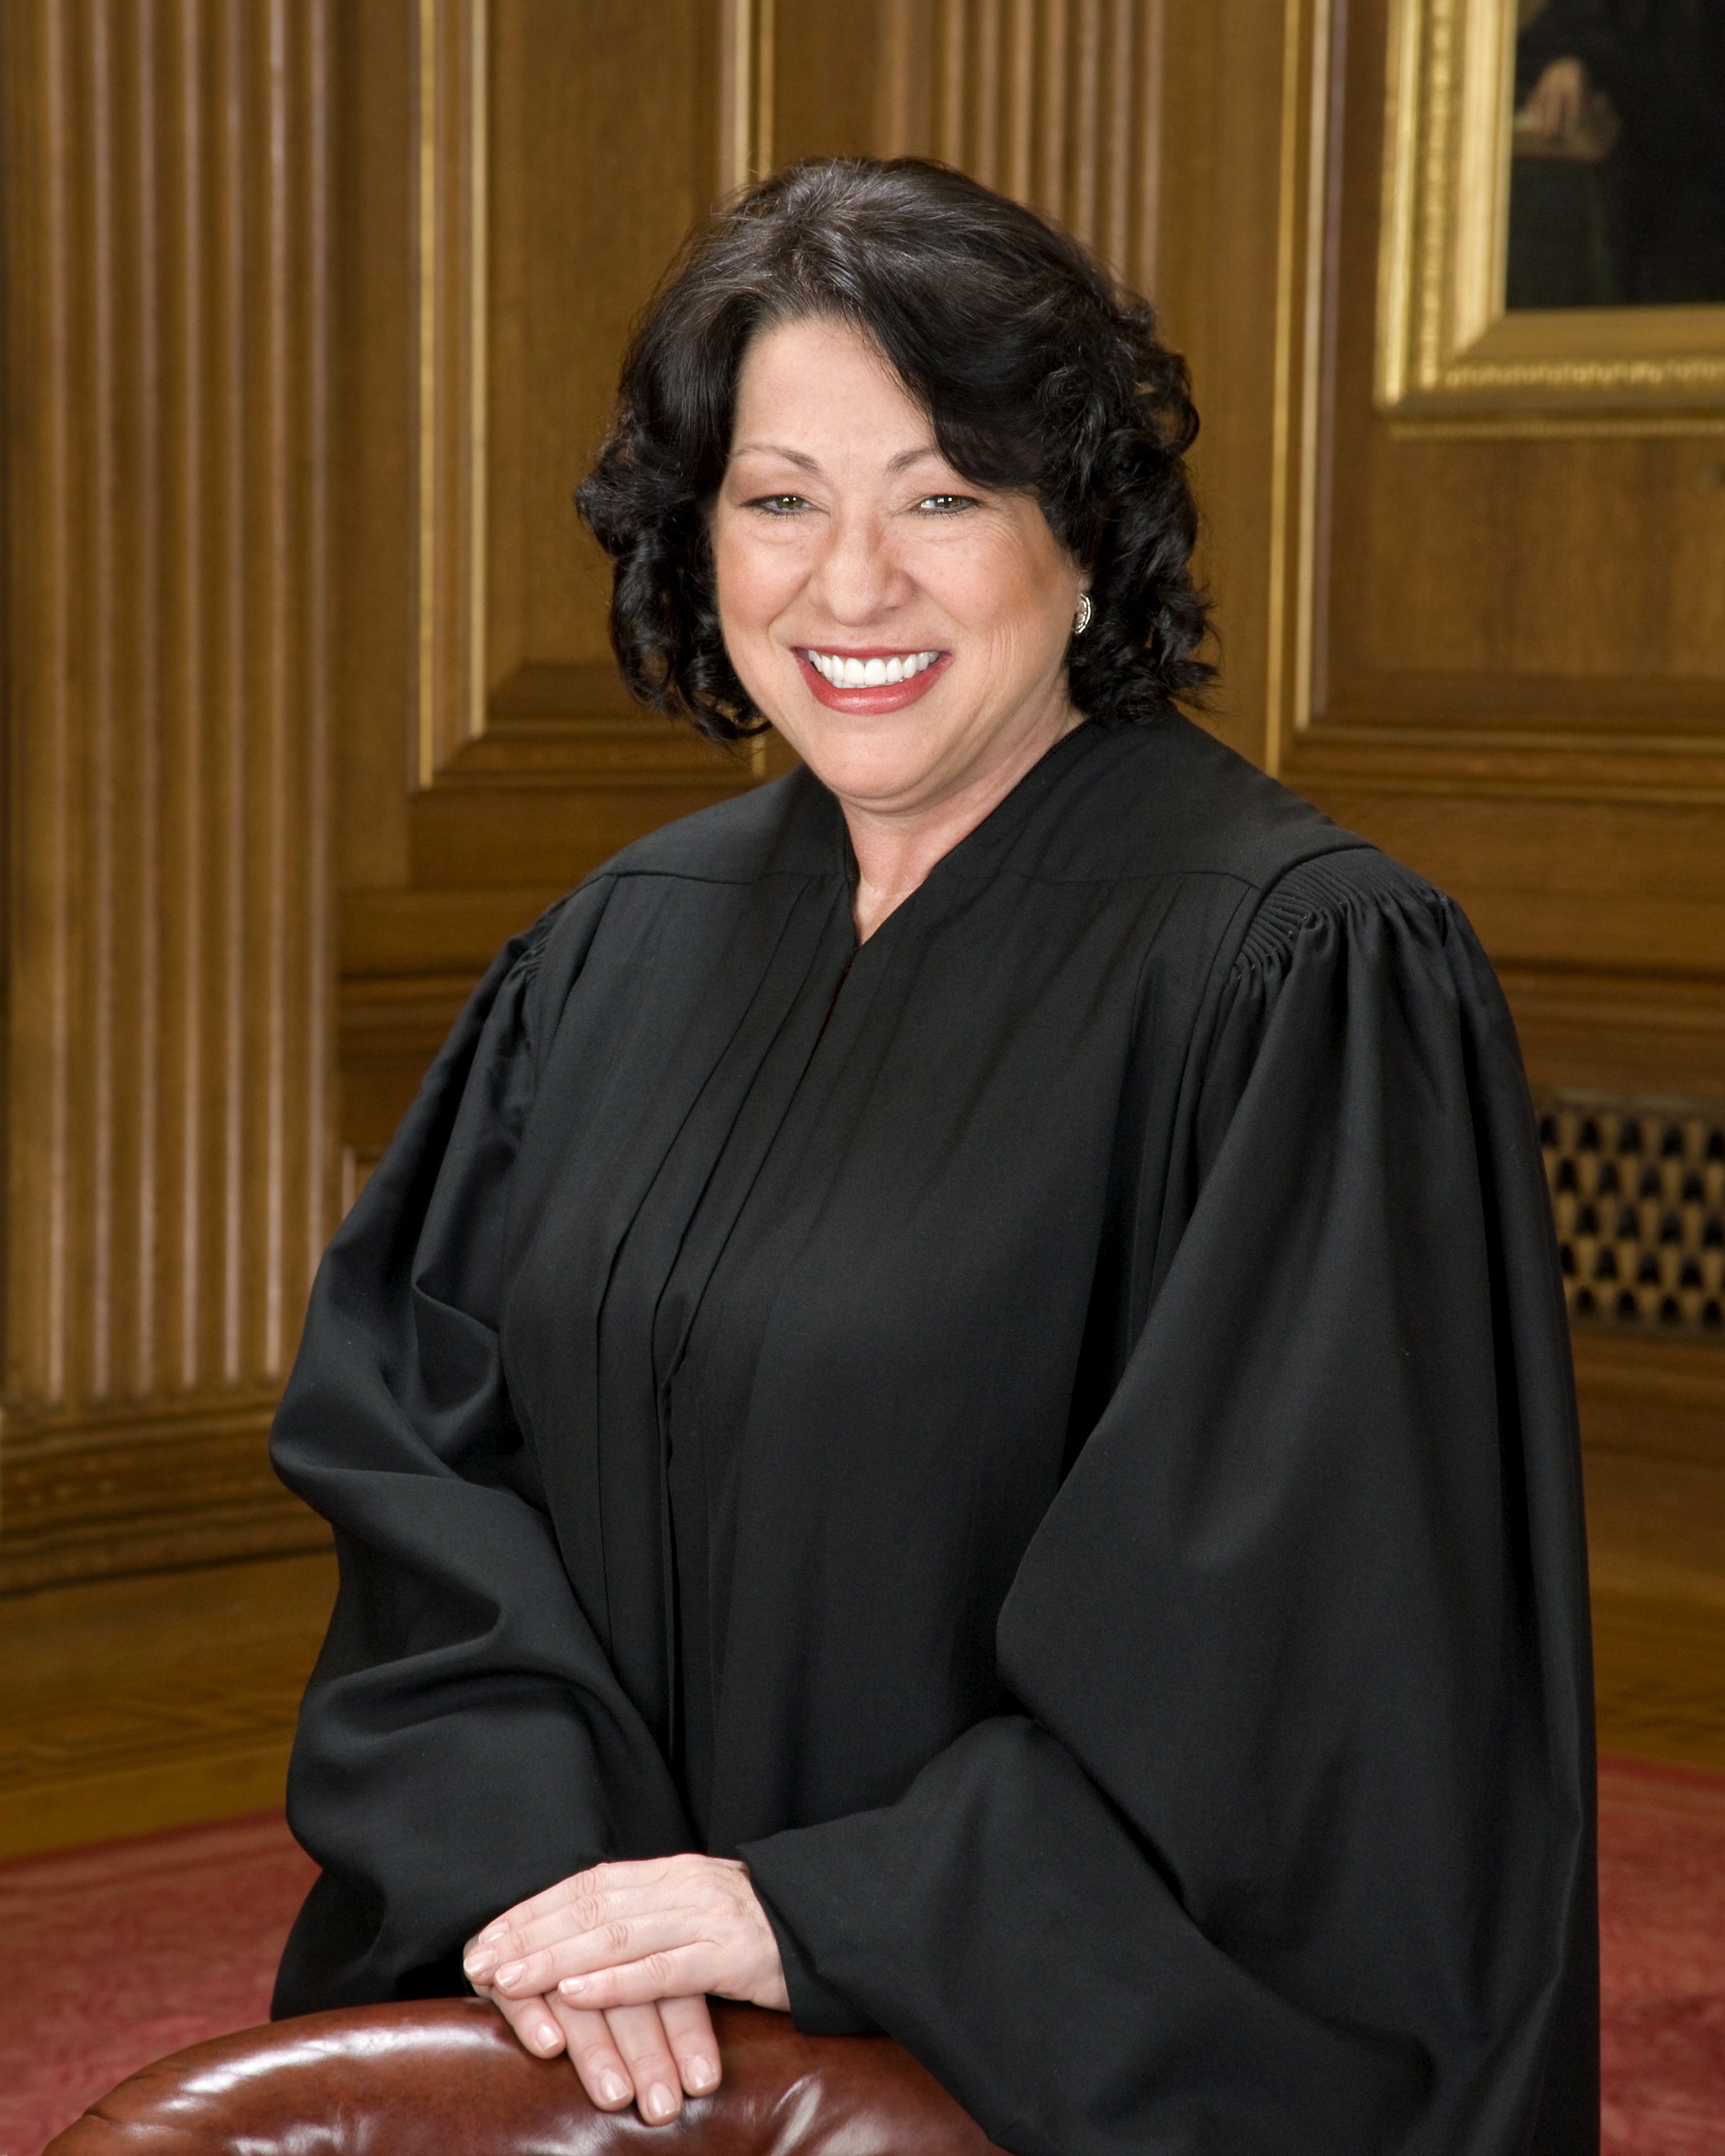 Sonia_Sotomayor_in_SCOTUS_robe.jpg